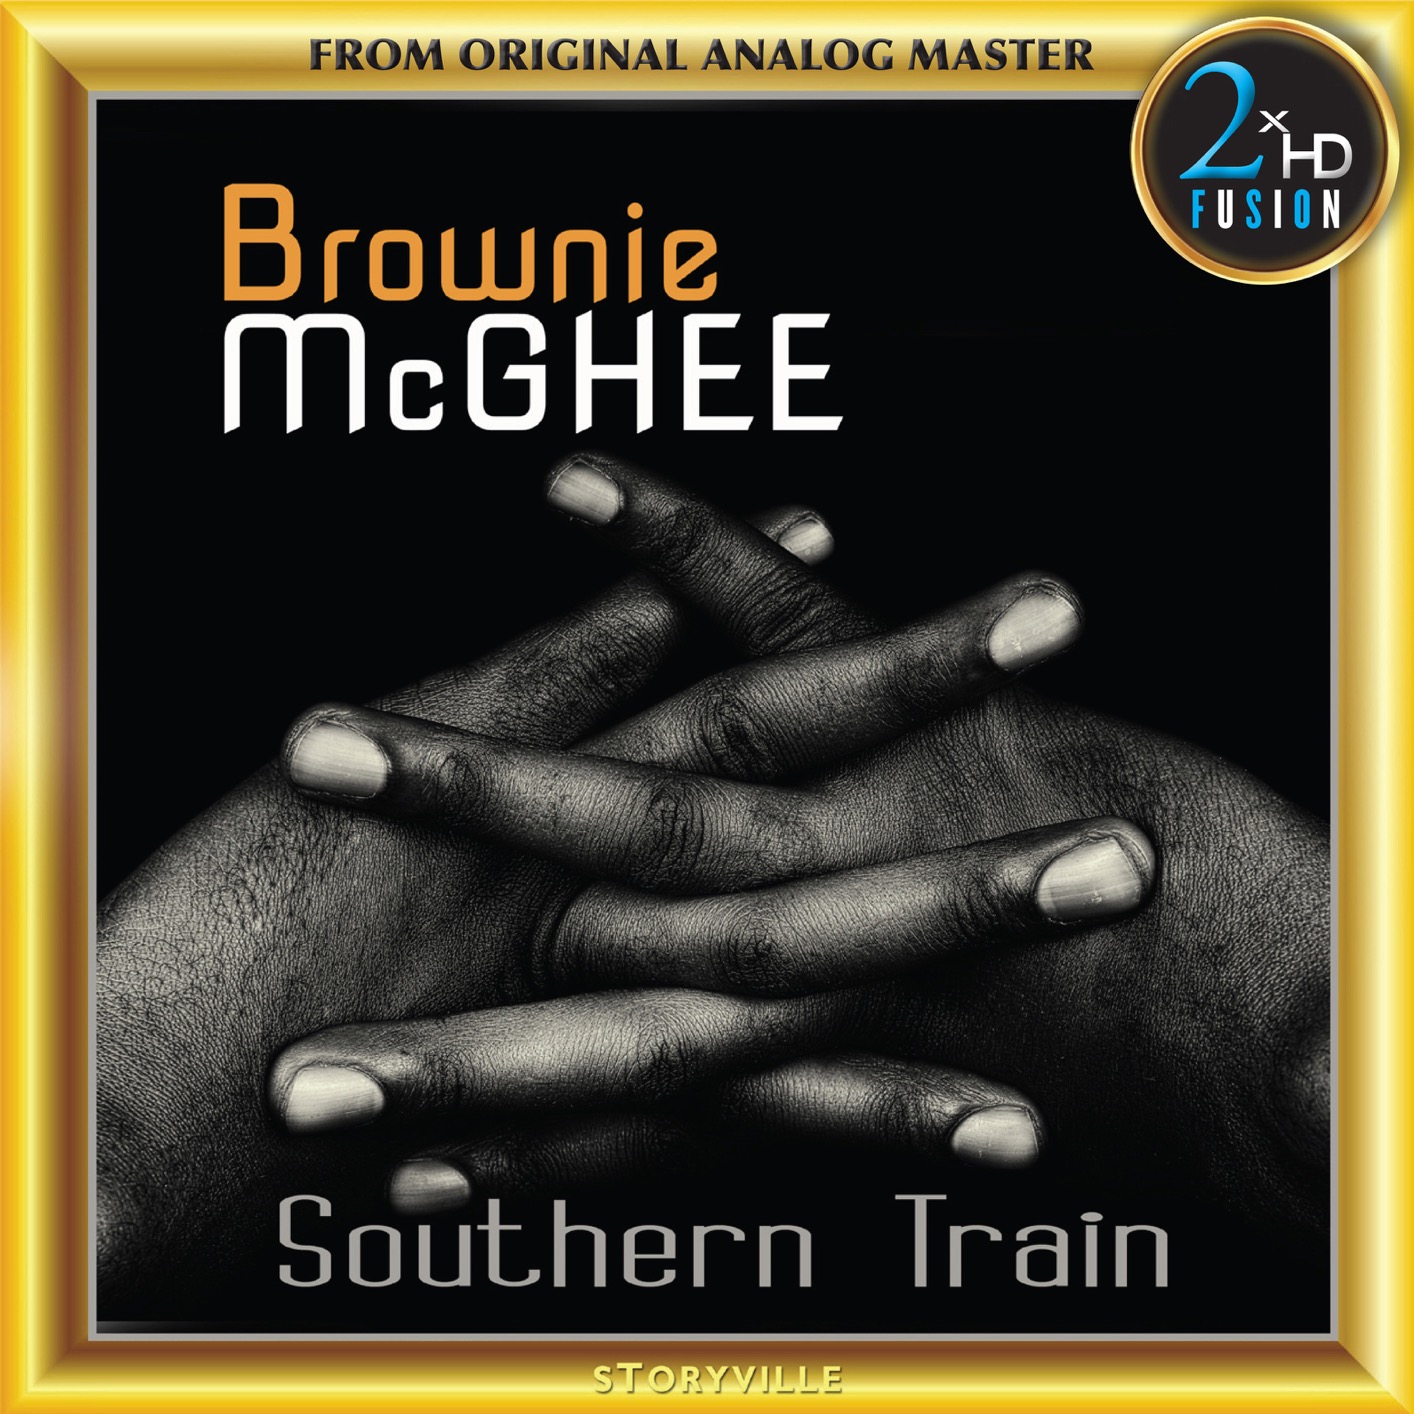 Brownie McGhee - Southern Train (2018) [FLAC 24bit/192kHz]